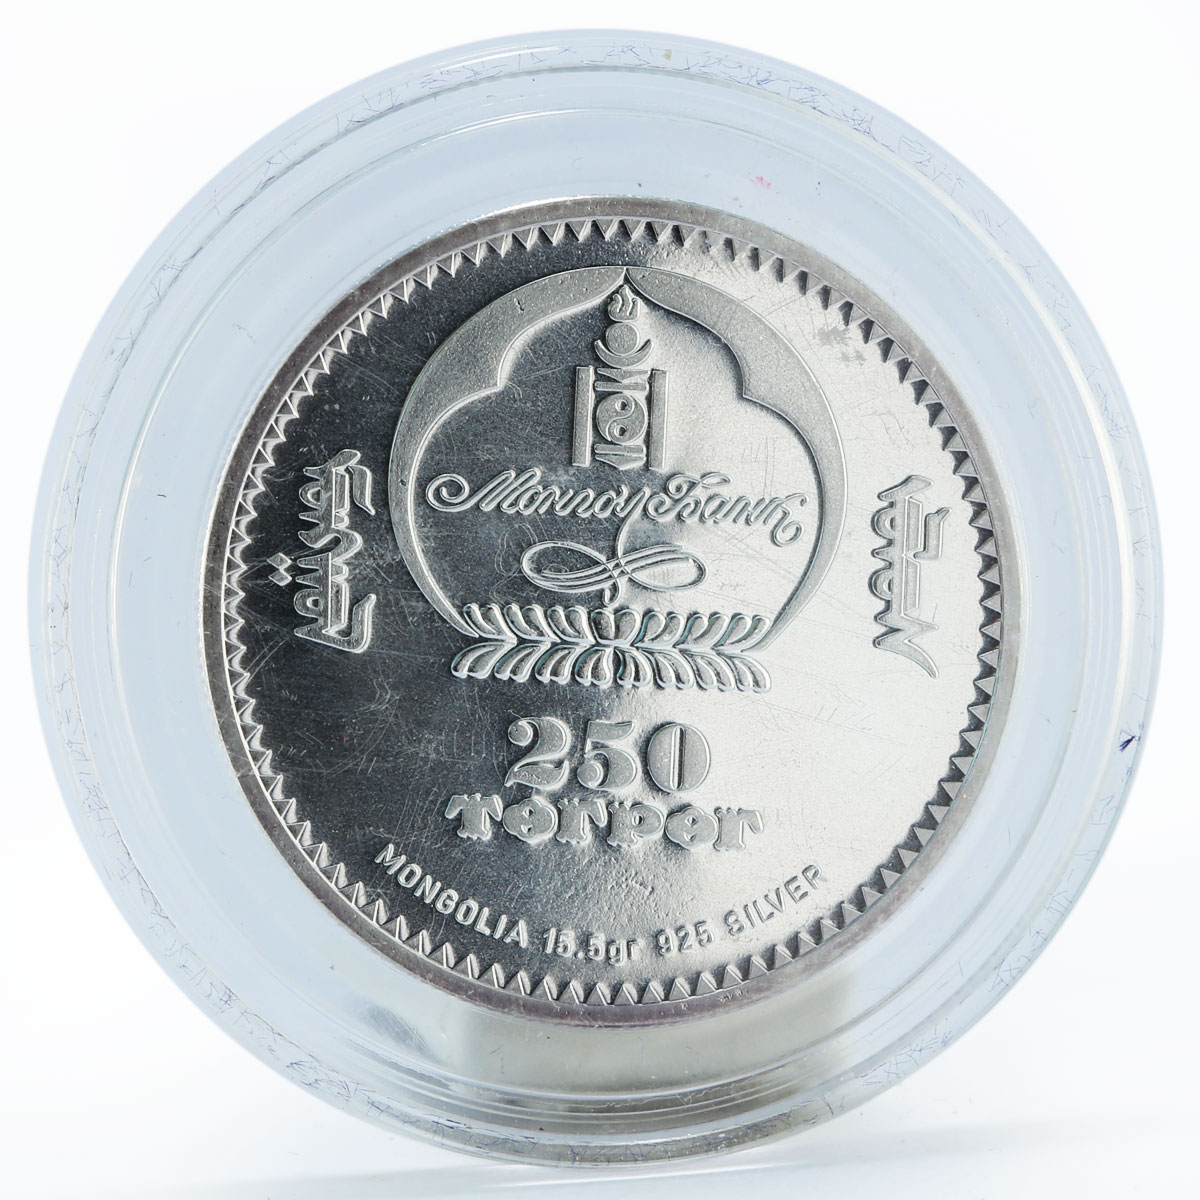 Mongolia 250 togrog Zodiac Virgo gilded silver coin 2007